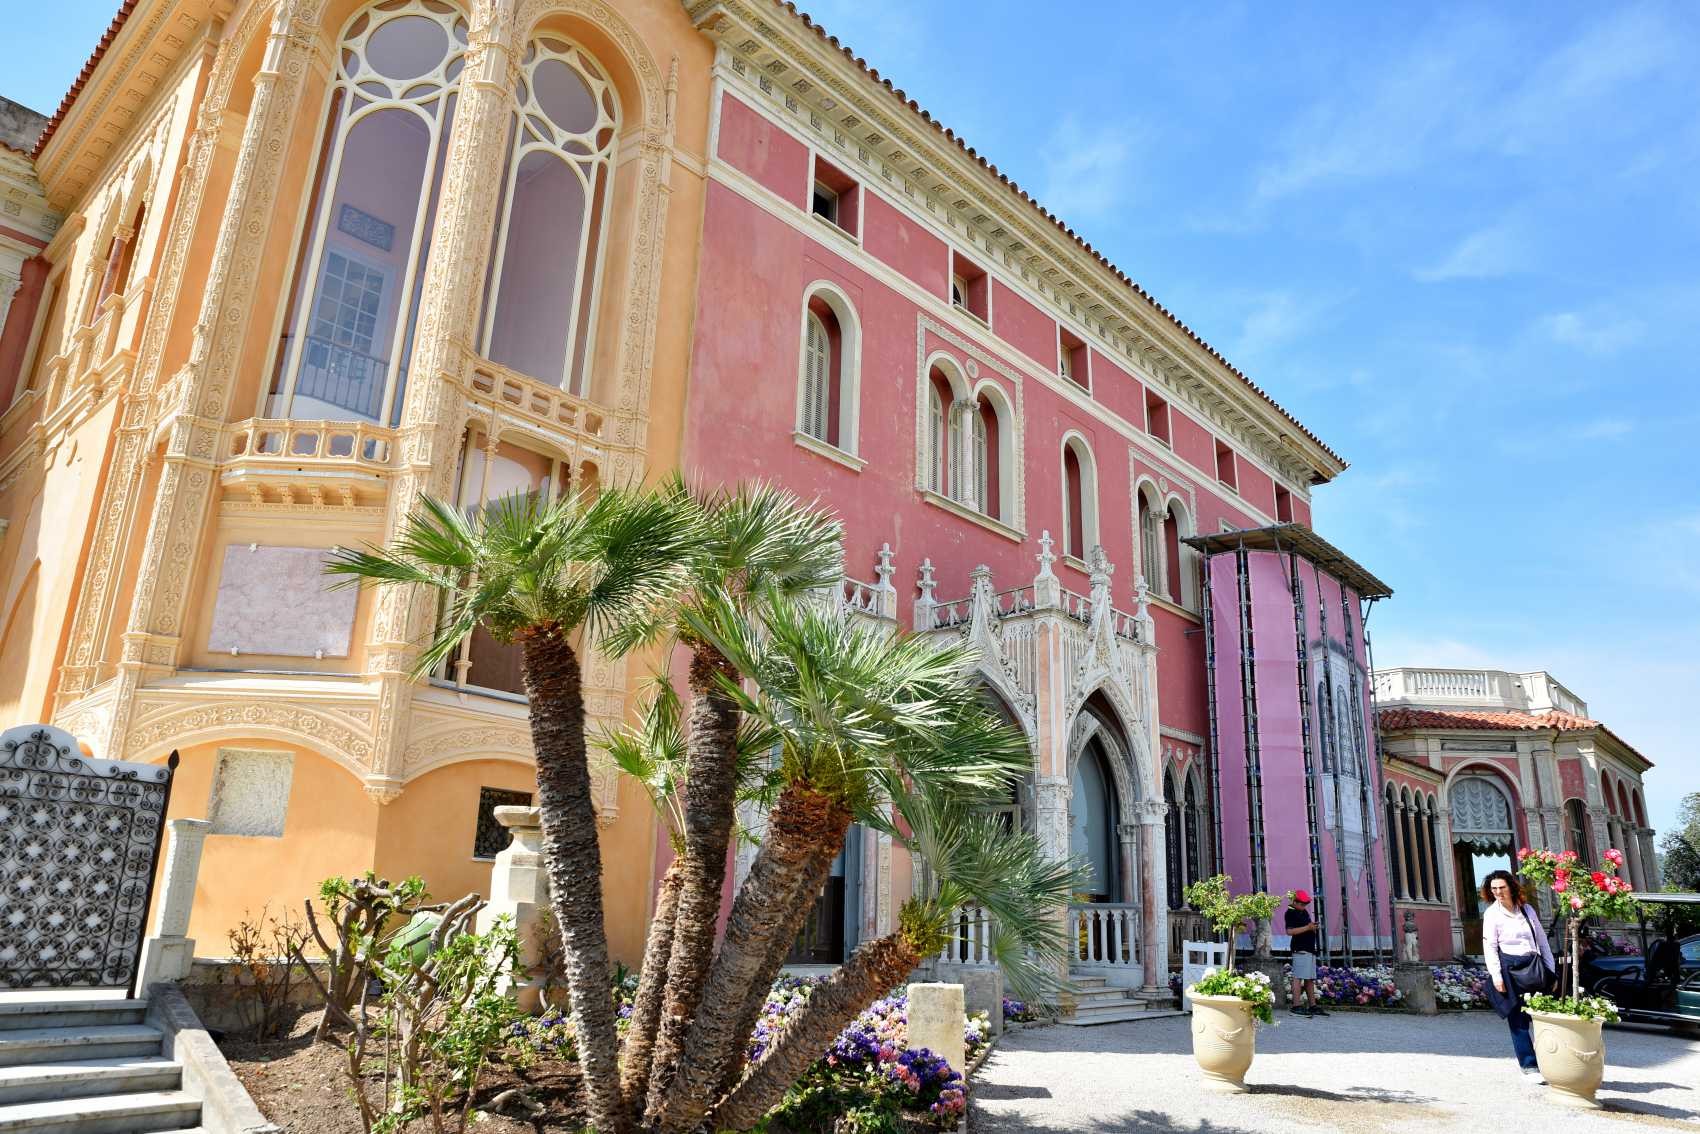 La façade nord évoque les palais italiens avec son porche d'entrée de style gothique